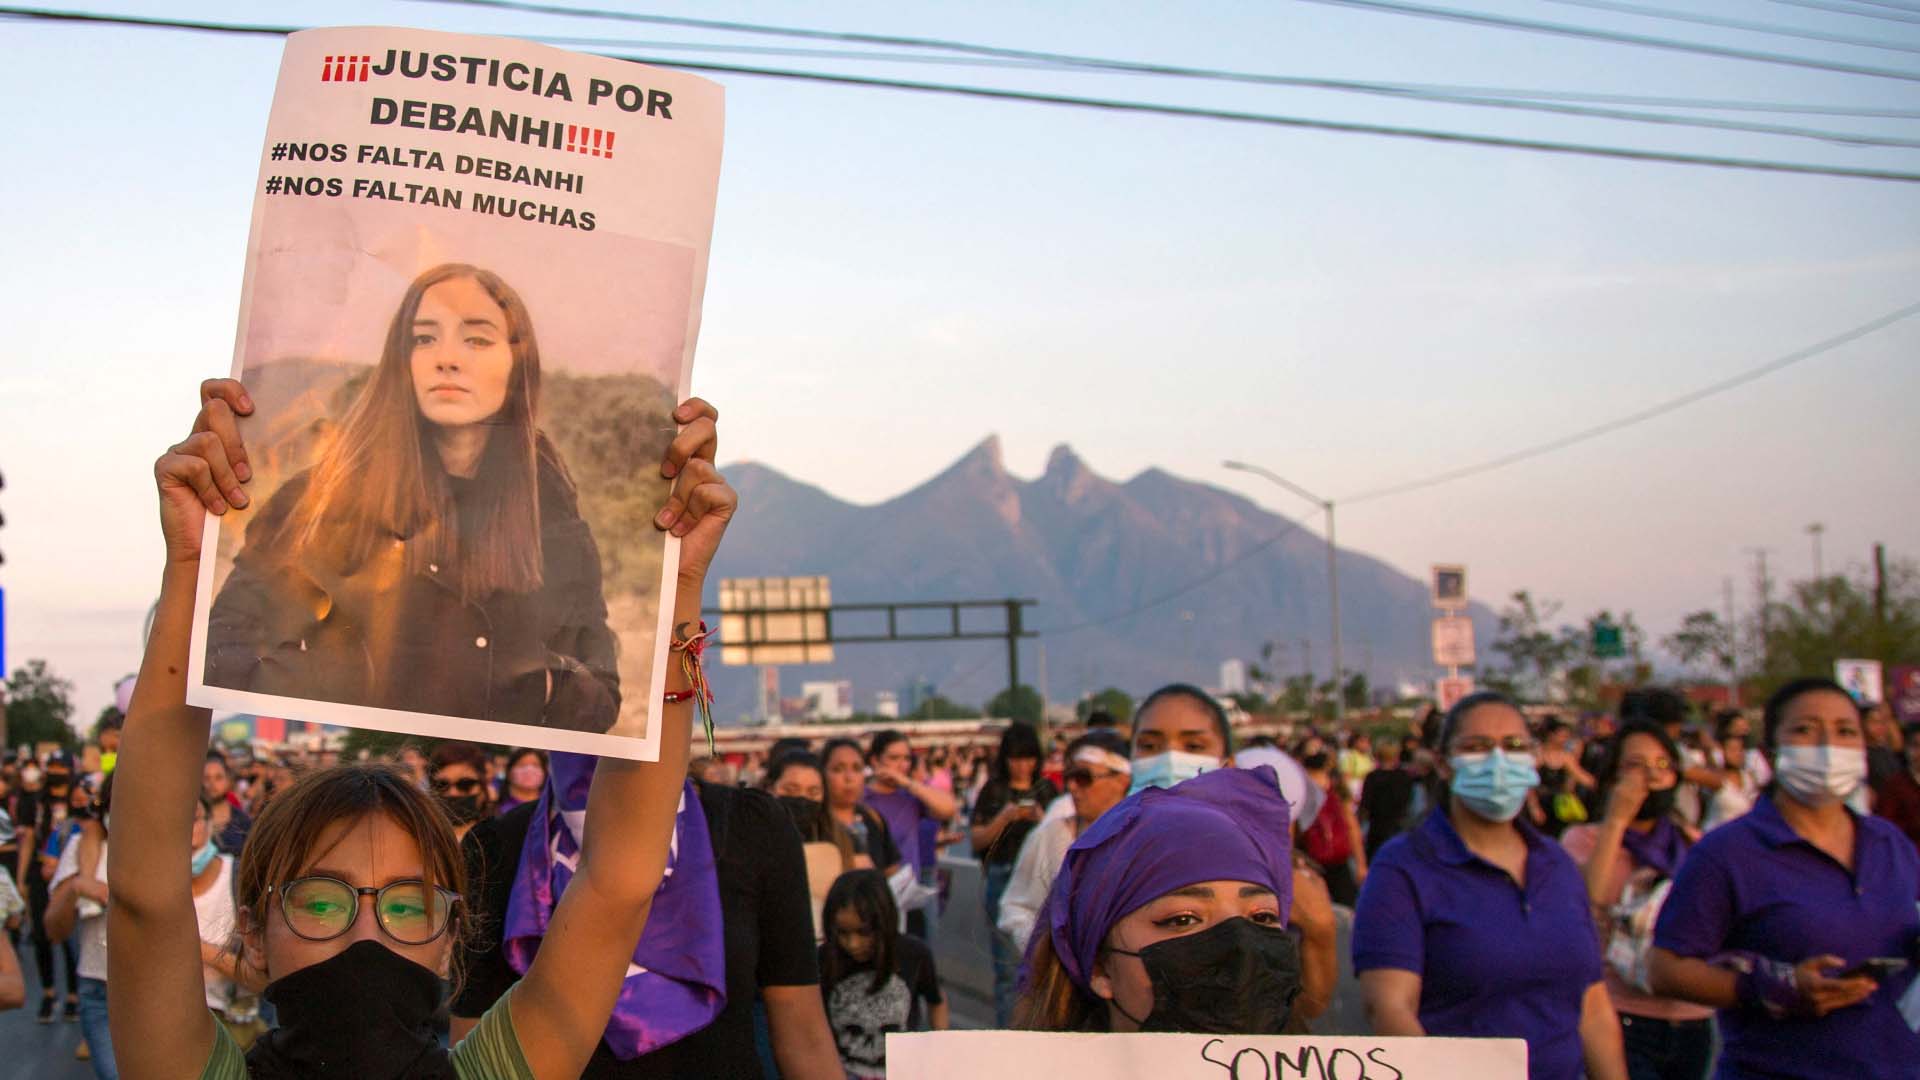 Cronología del caso de la joven fallecida en Nuevo León, México